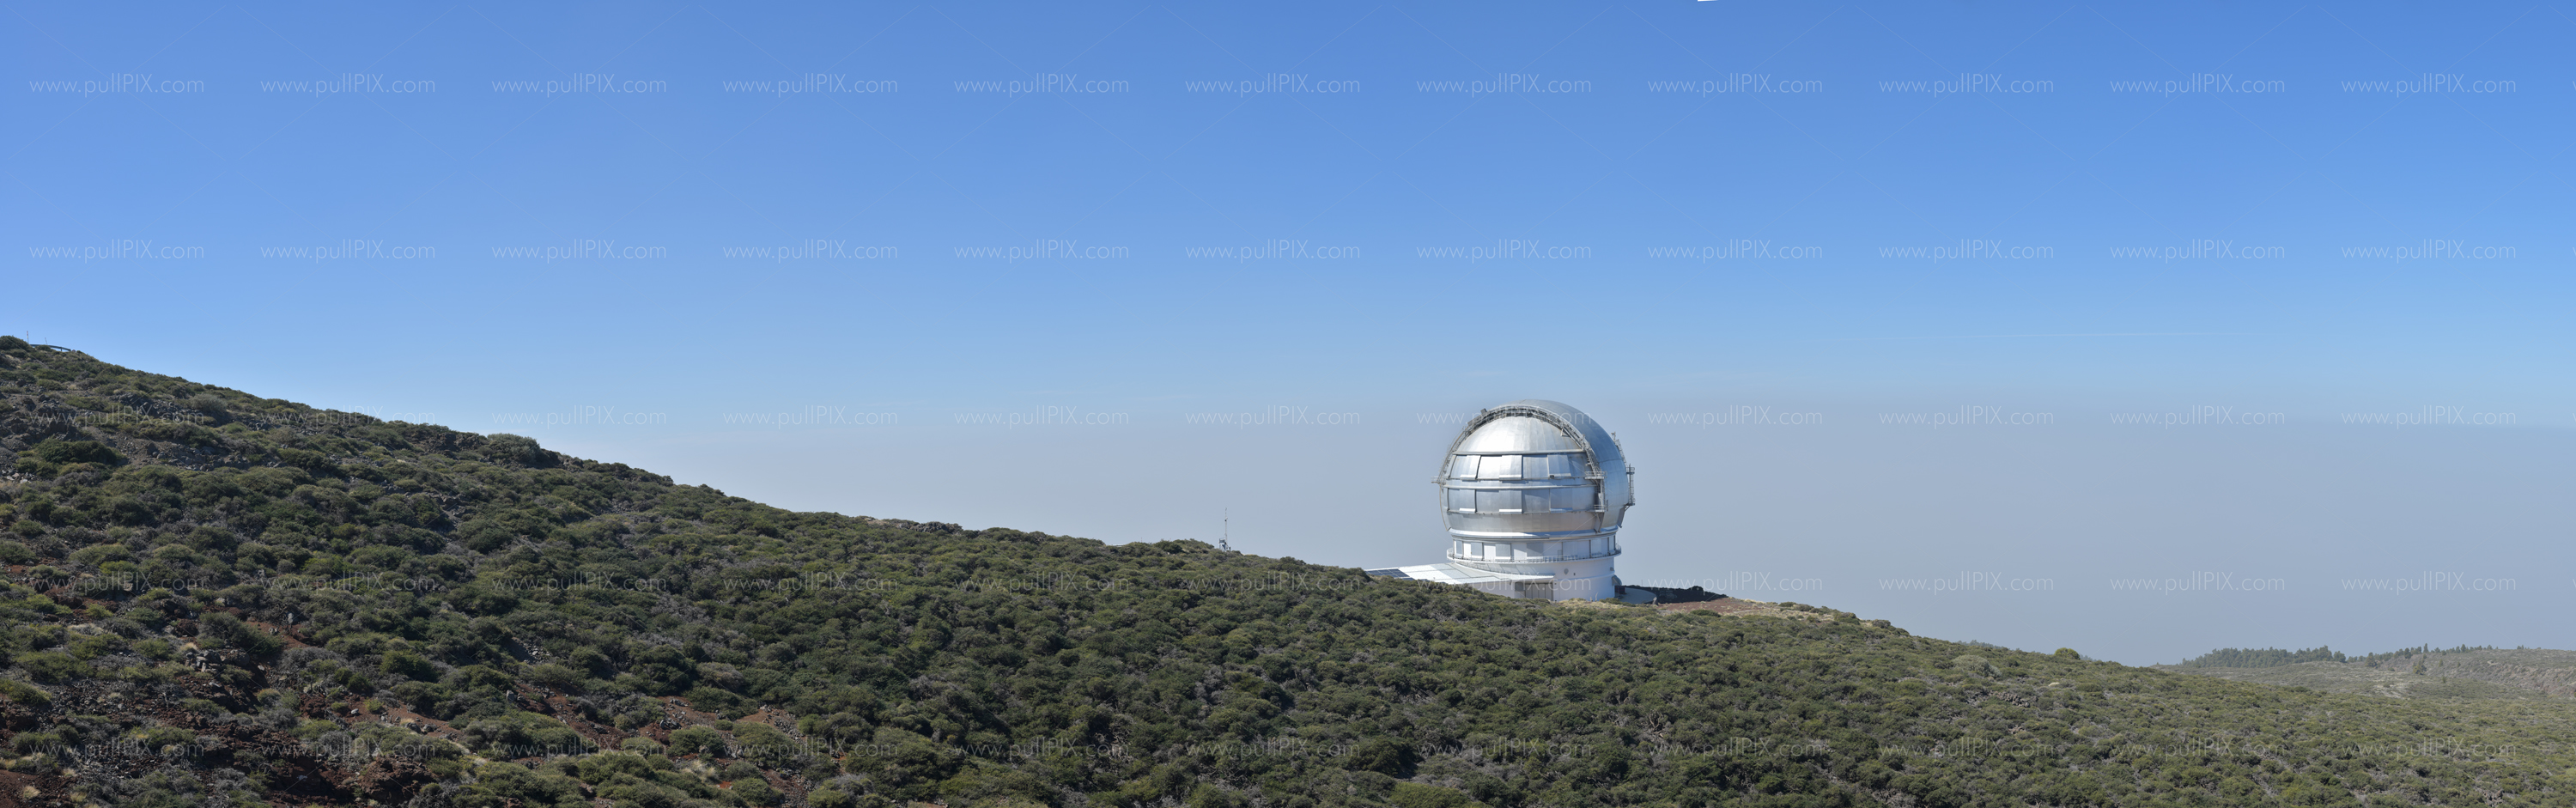 Preview Gran Telescopio CANARIAS.jpg